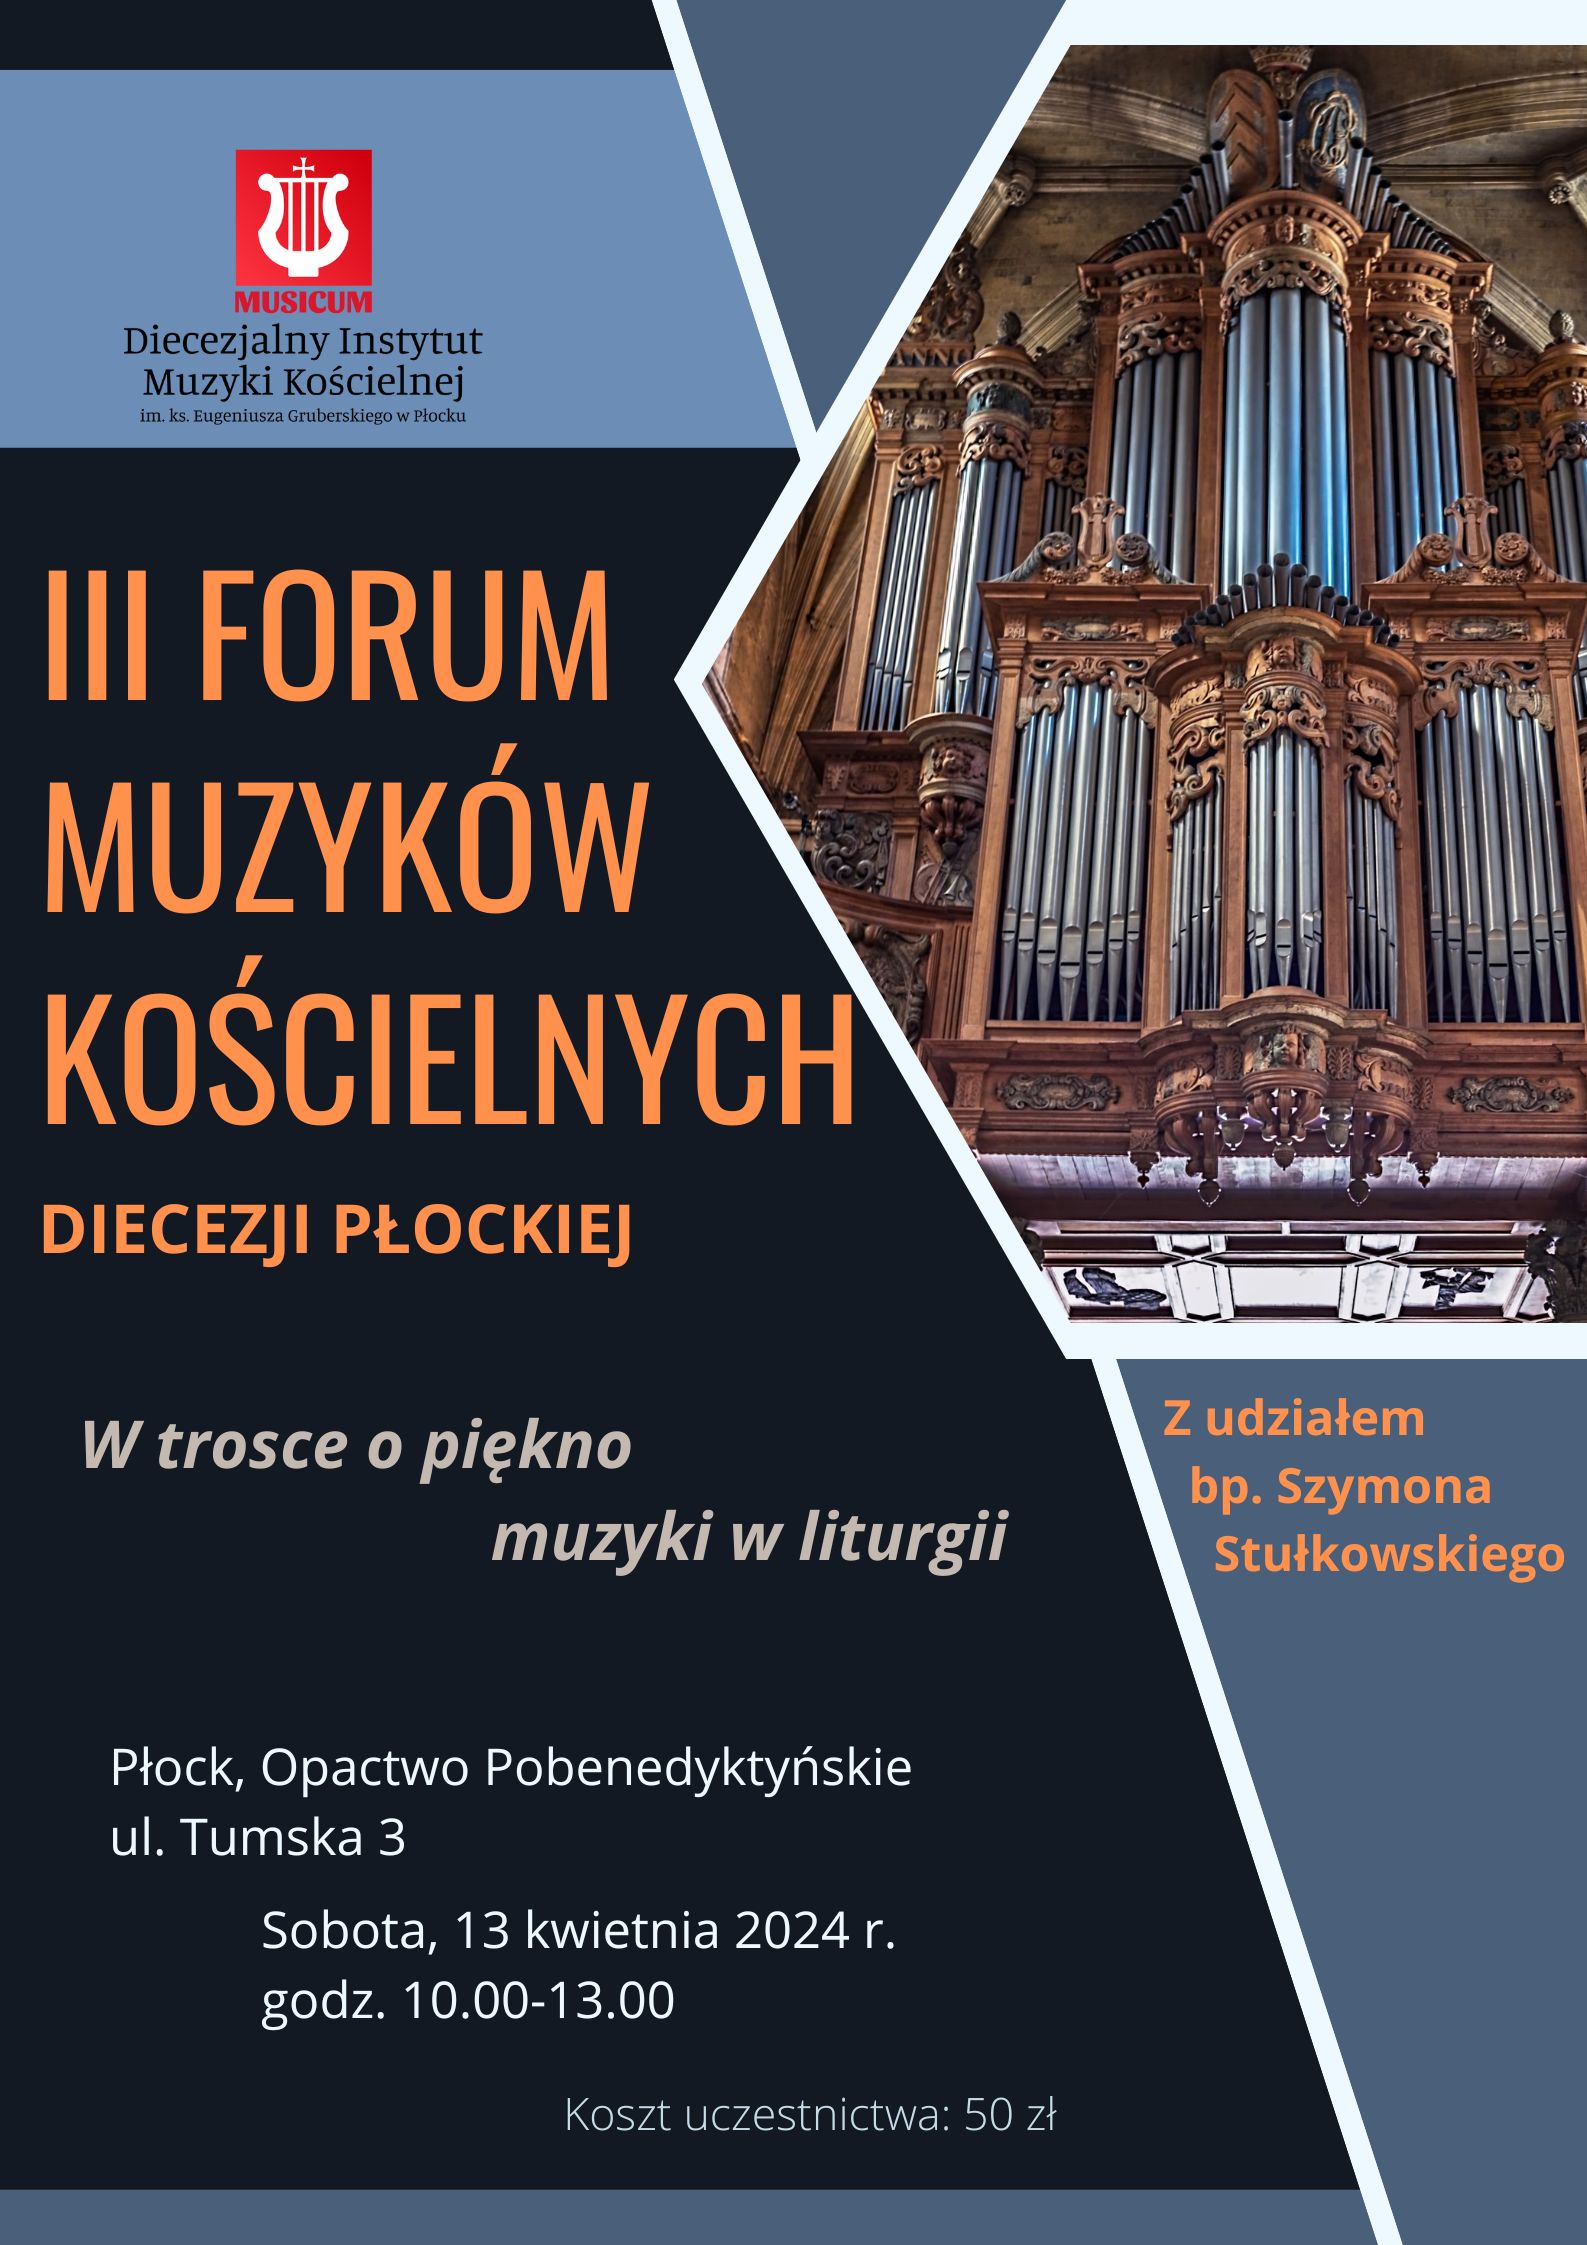 III Forum Muzyków Kościelnych Diecezji Płockiej